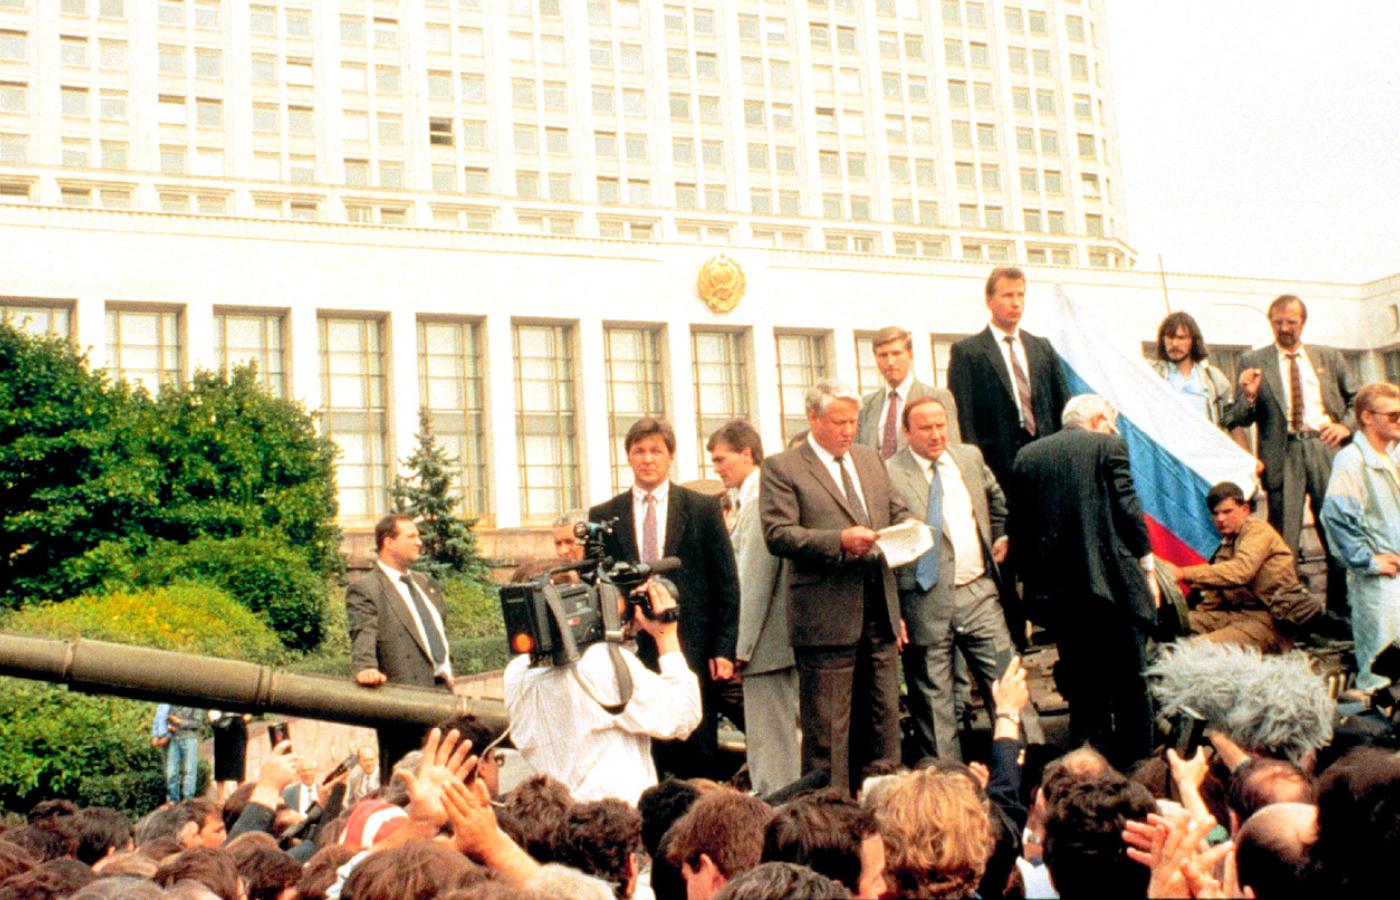 Moskwa, sierpień 1991: Borys Jelcyn podczas zamachu stanu (przez Janajewa) wzywał naród do przeciwstawienia się puczystom.